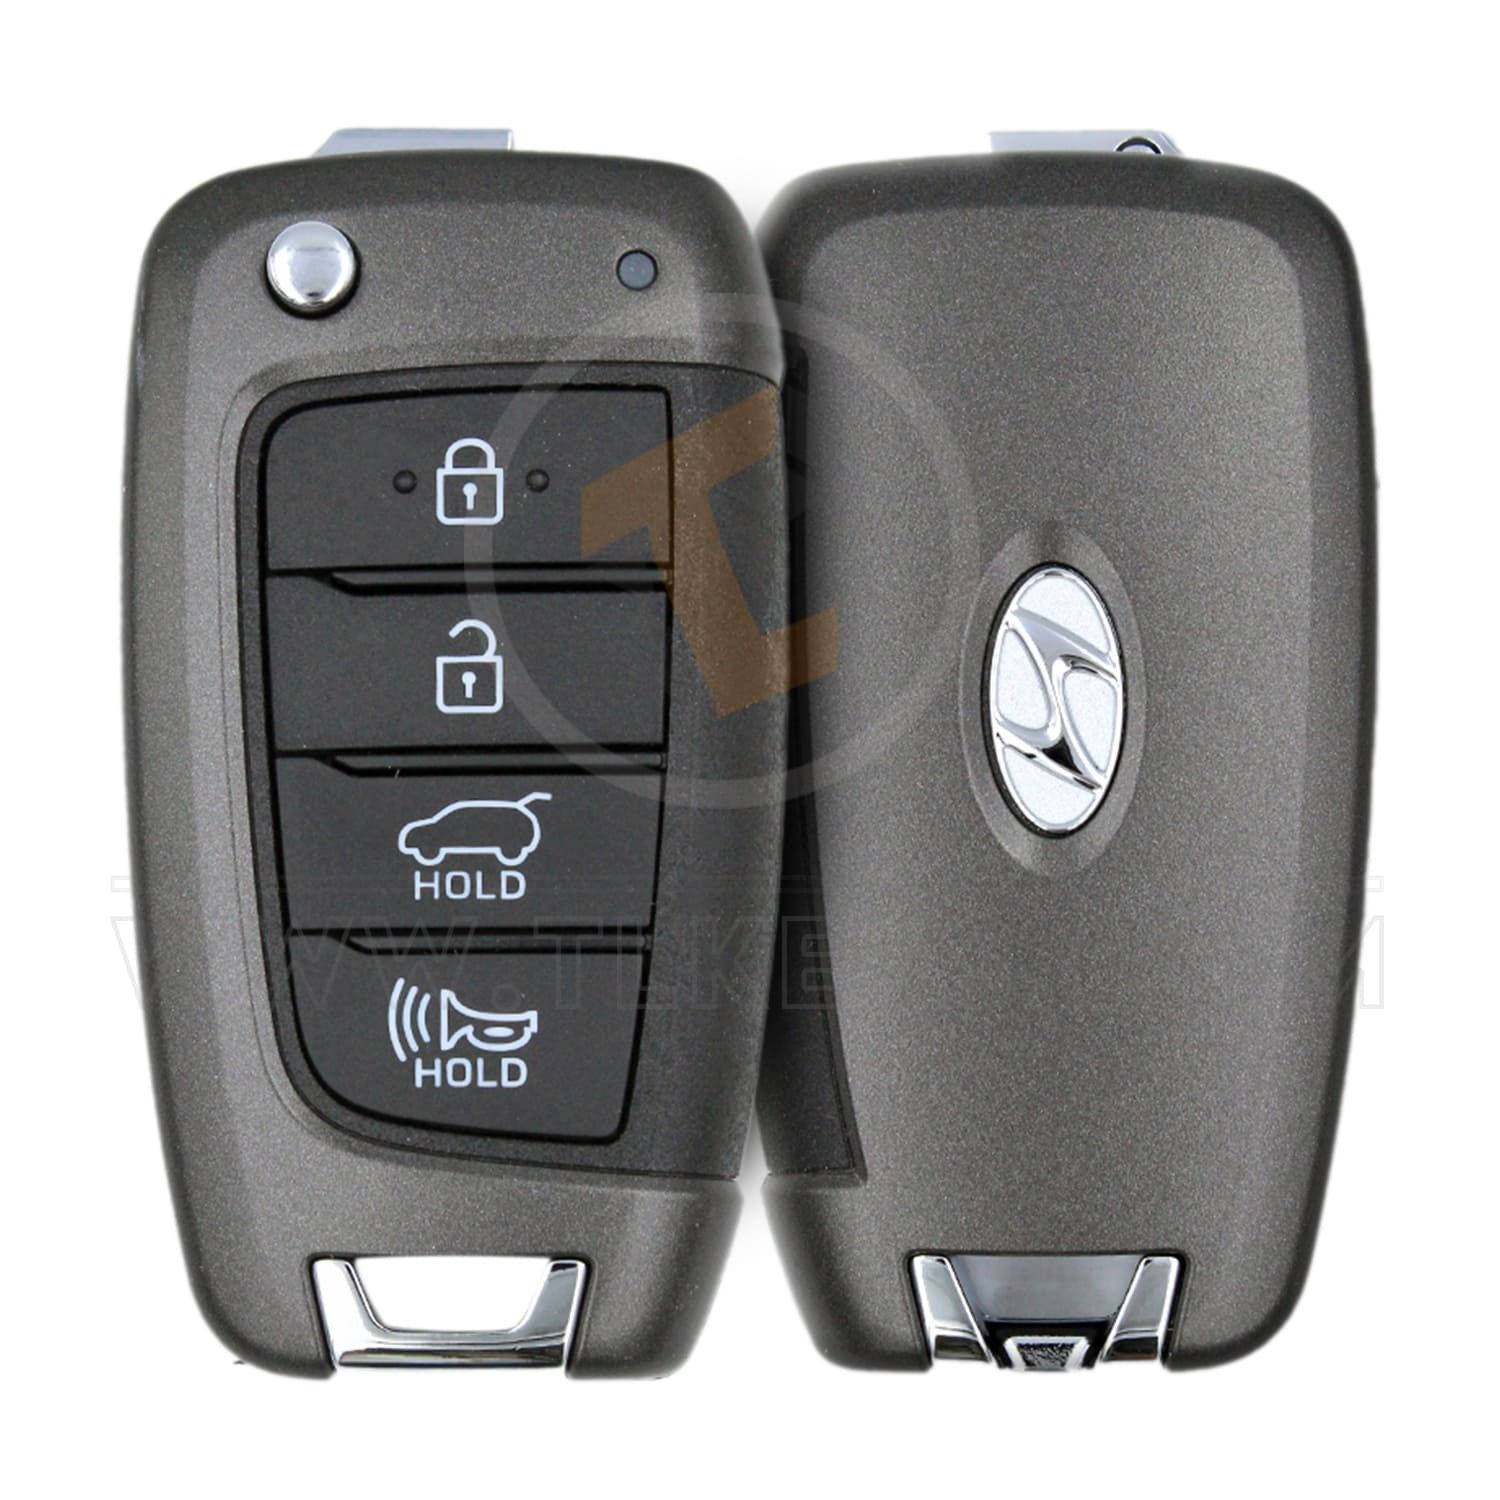 Genuine Hyundai Santa Fe Flip Key Remote P/N: 95430-S2100 433MHz Remote Type Flip Key Remote